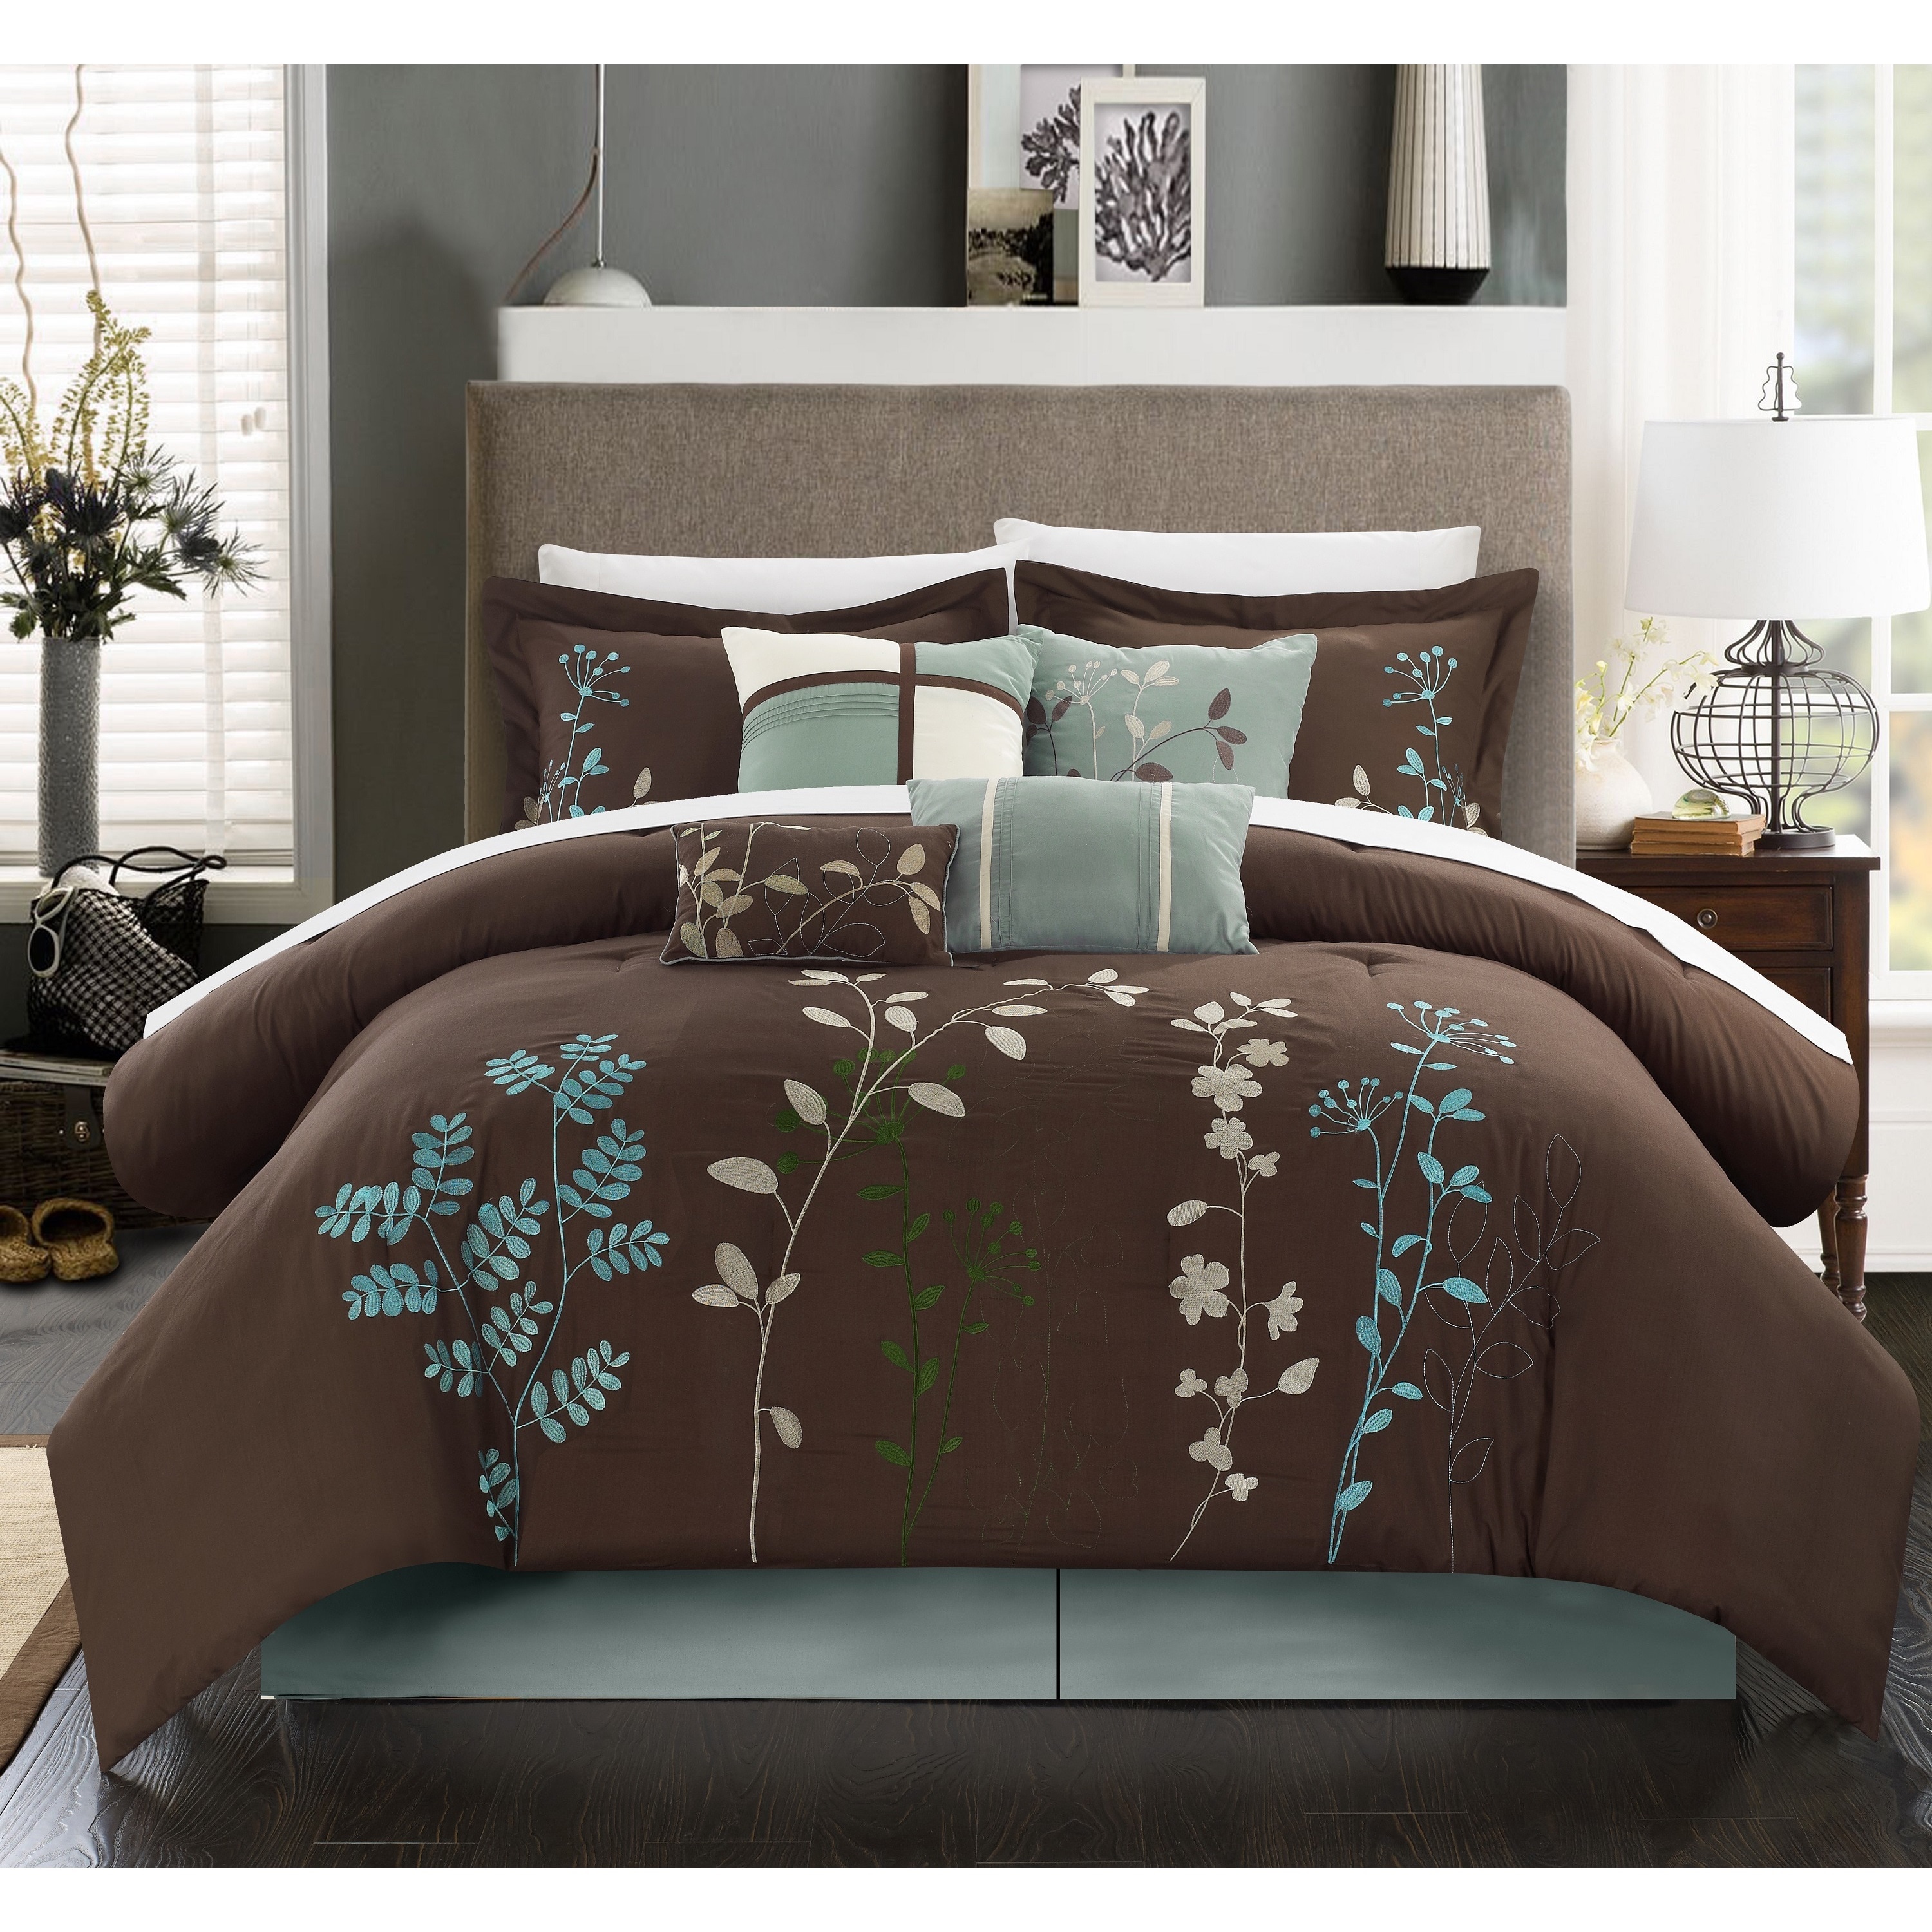 Copper Grove Pelee 8 Piece Chocolate Brown Comforter Set Overstock 20223449 King